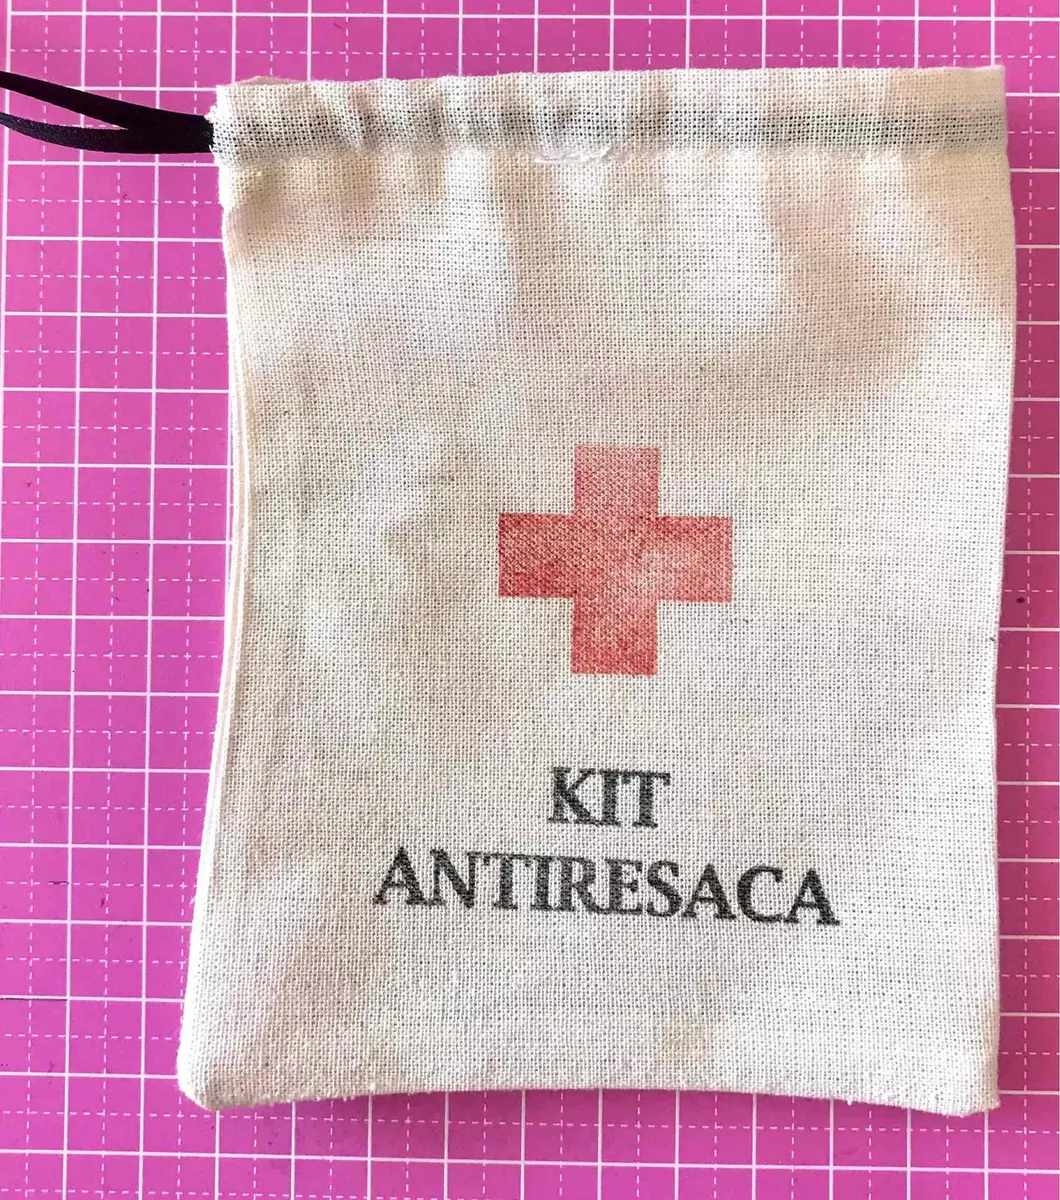 Bolsas Kit Antiresaca Lienzo Souvenir (pack X 10 Unos.)